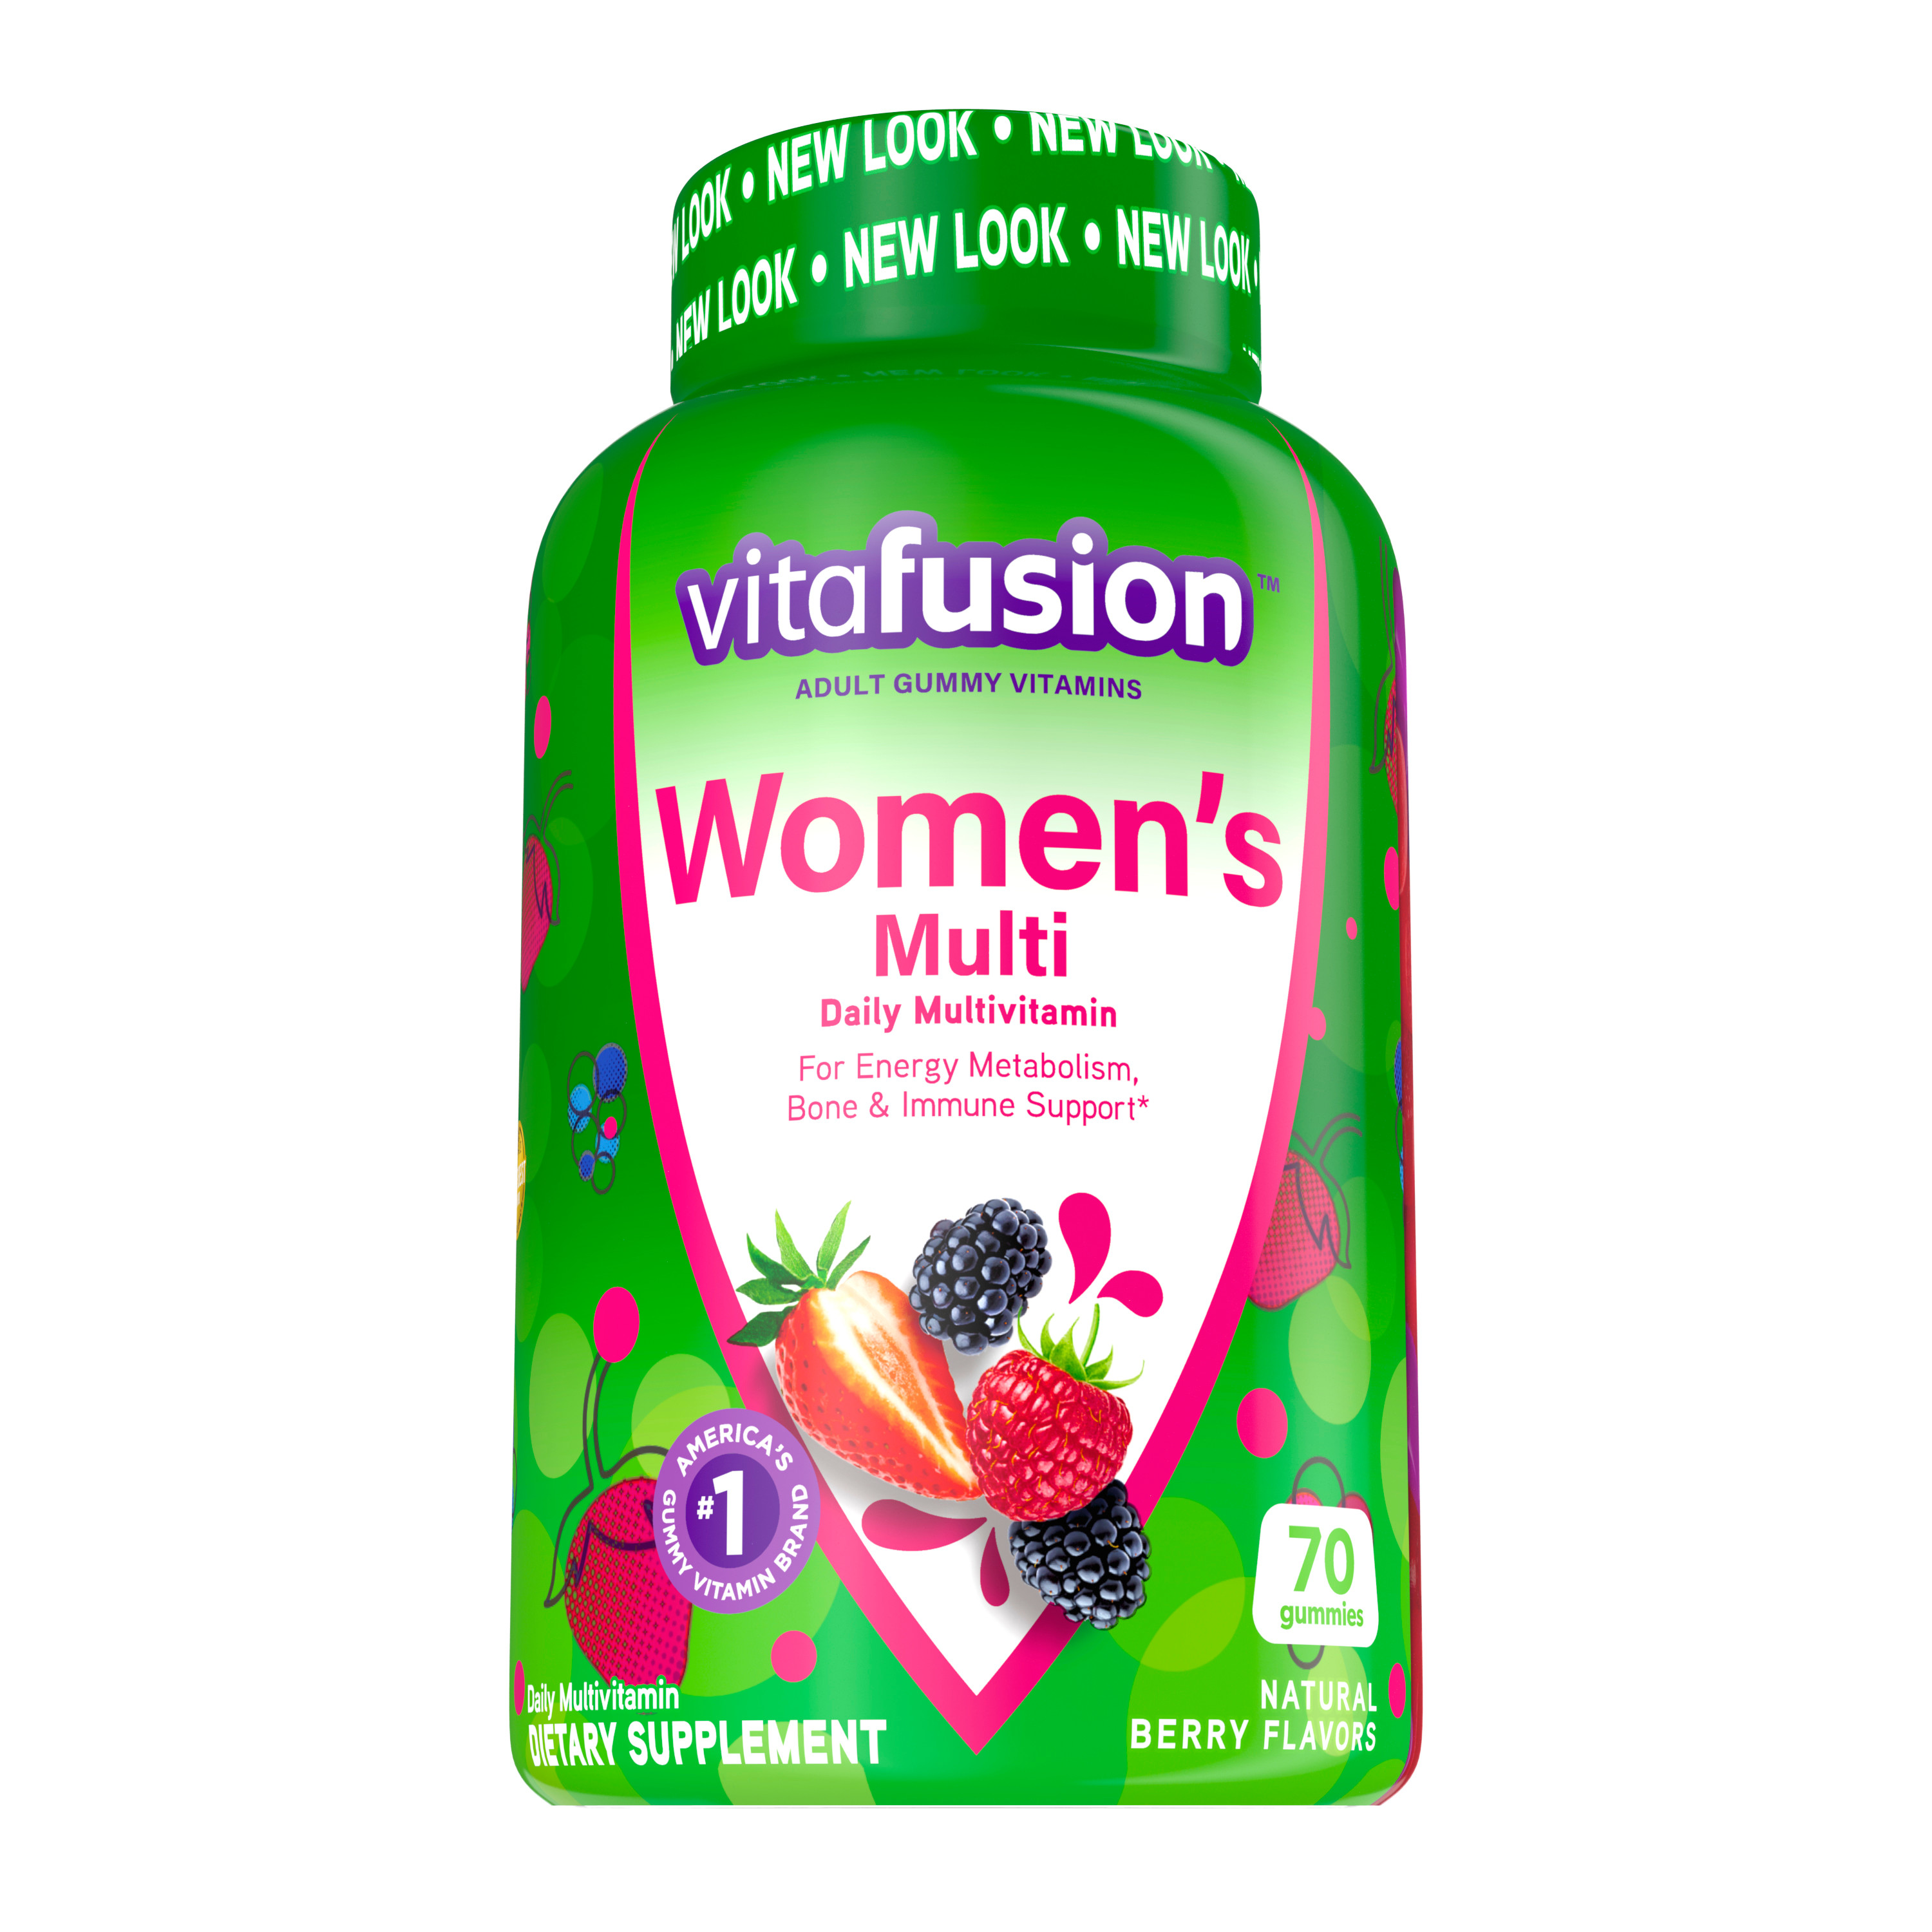 Vitafusion Women’s Daily Gummy Multivitamin: Vitamin C & E, Delicious Berry Flavors, 70ct (35 day supply) - image 1 of 11